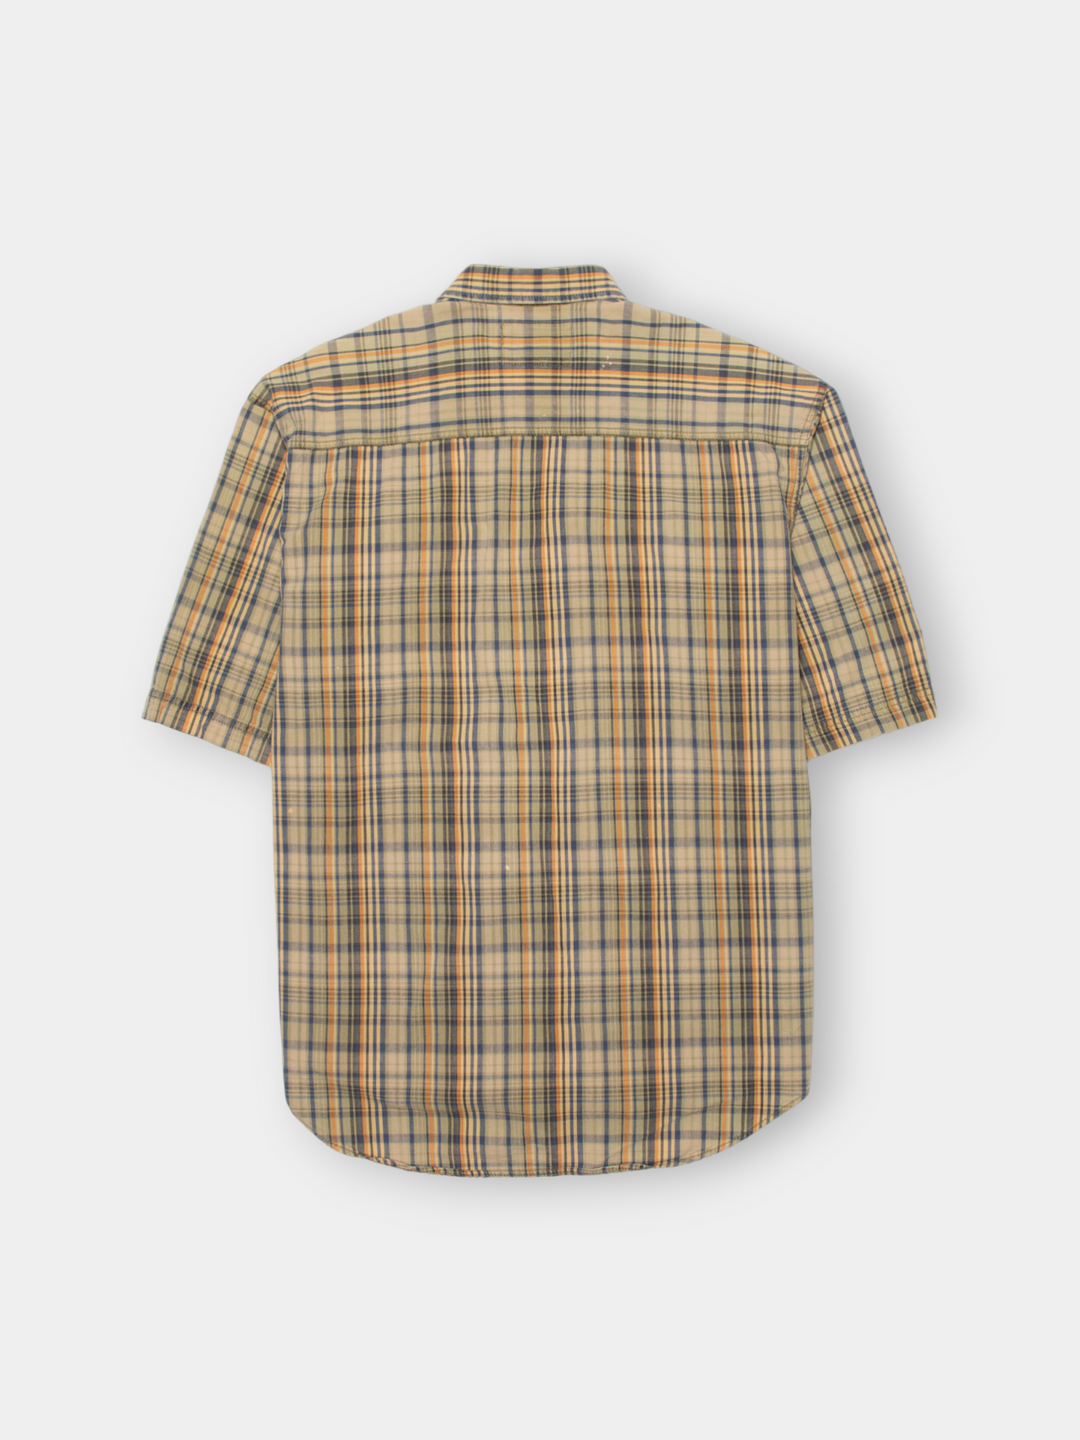 90s Levis Plaid Shirt (L)